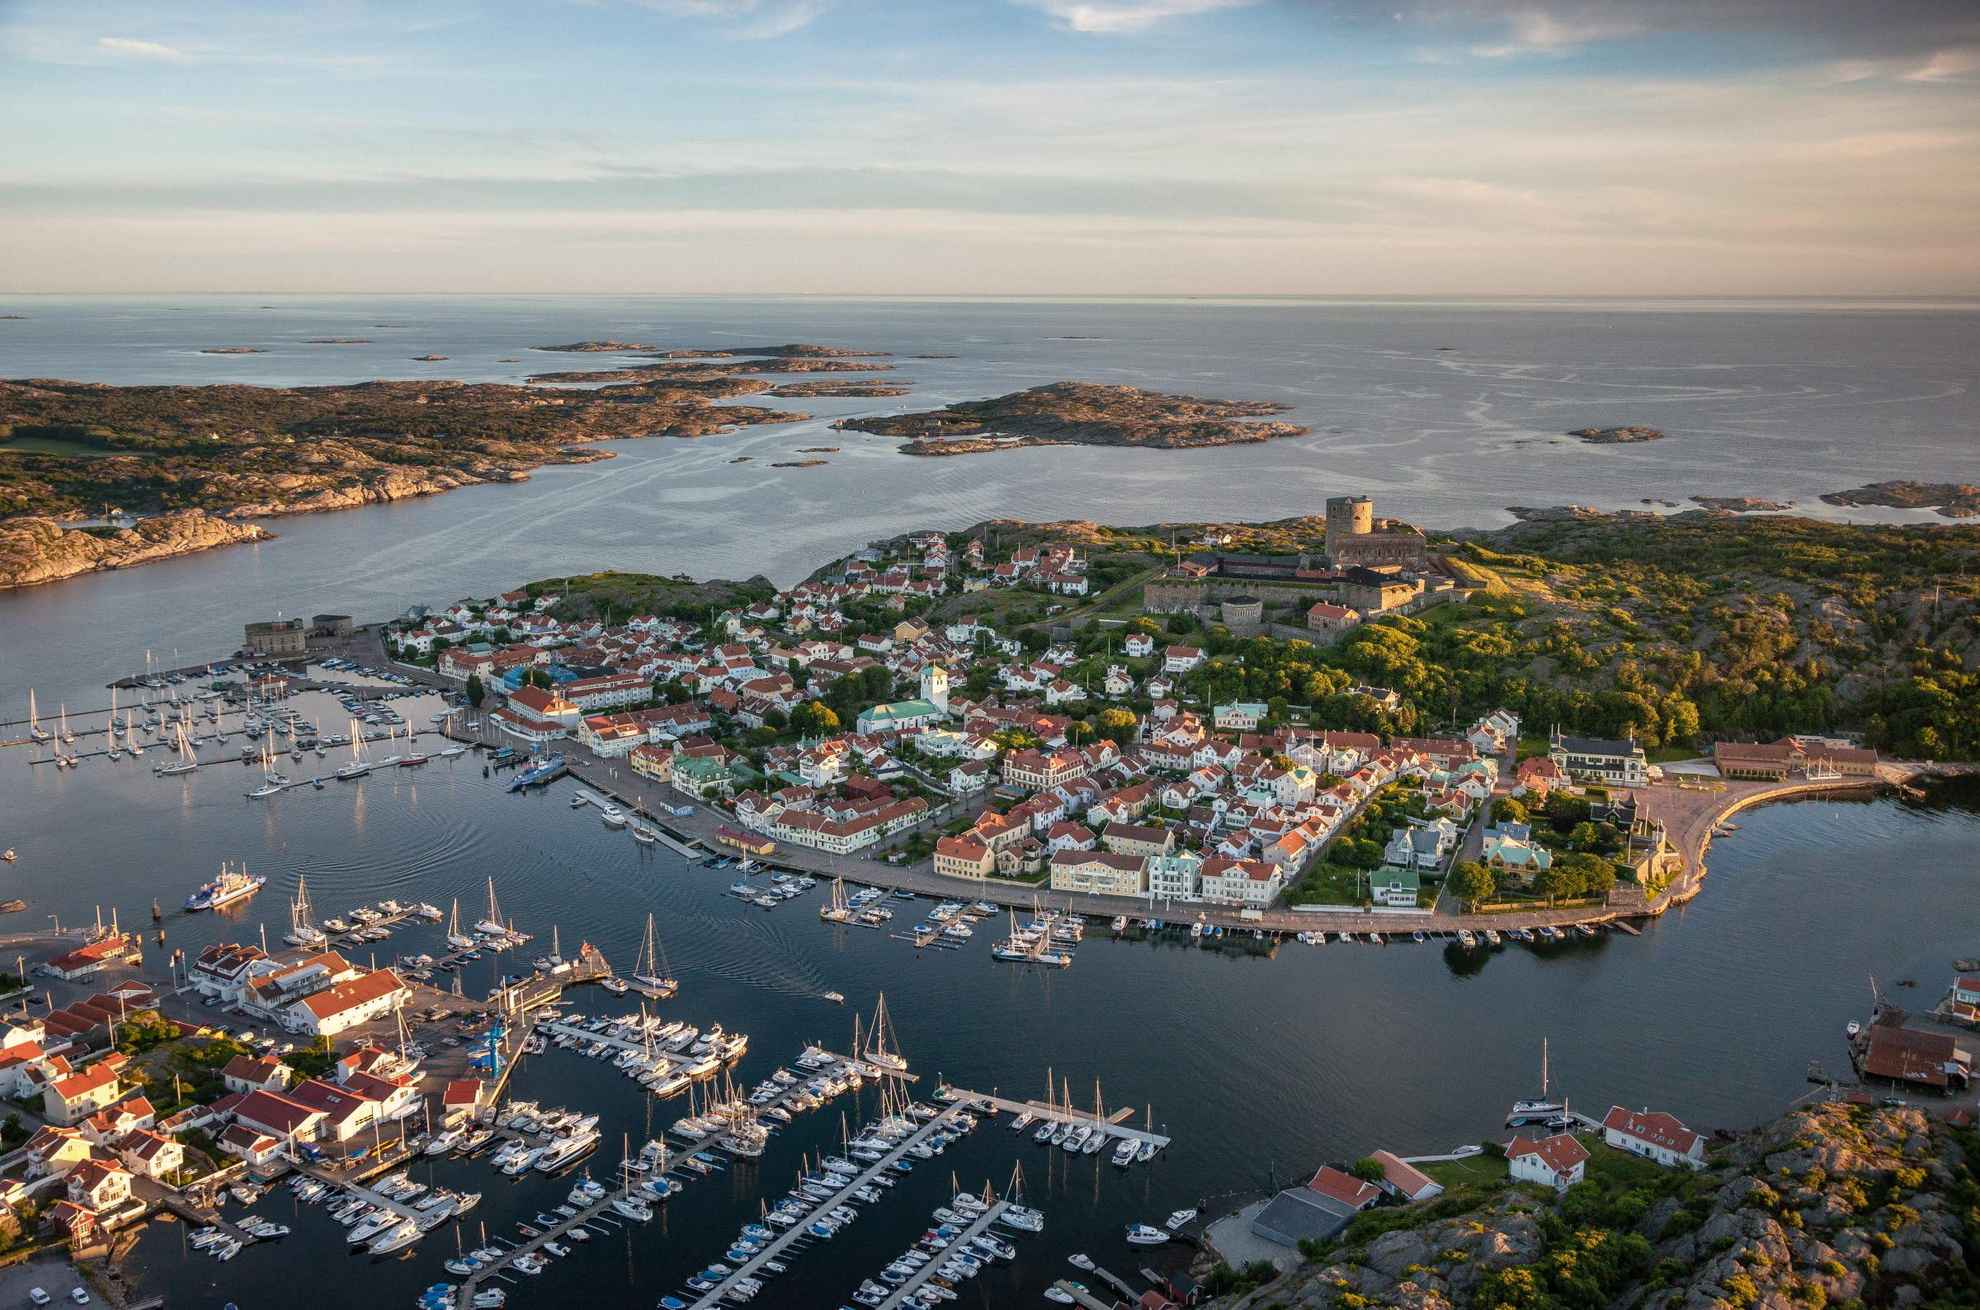 Vue aérienne de la petite ville de Marstrand avec de nombreux voiliers en premier plan. La forteresse de l'île se situe au centre et on voit l'archipel en arrière-plan.